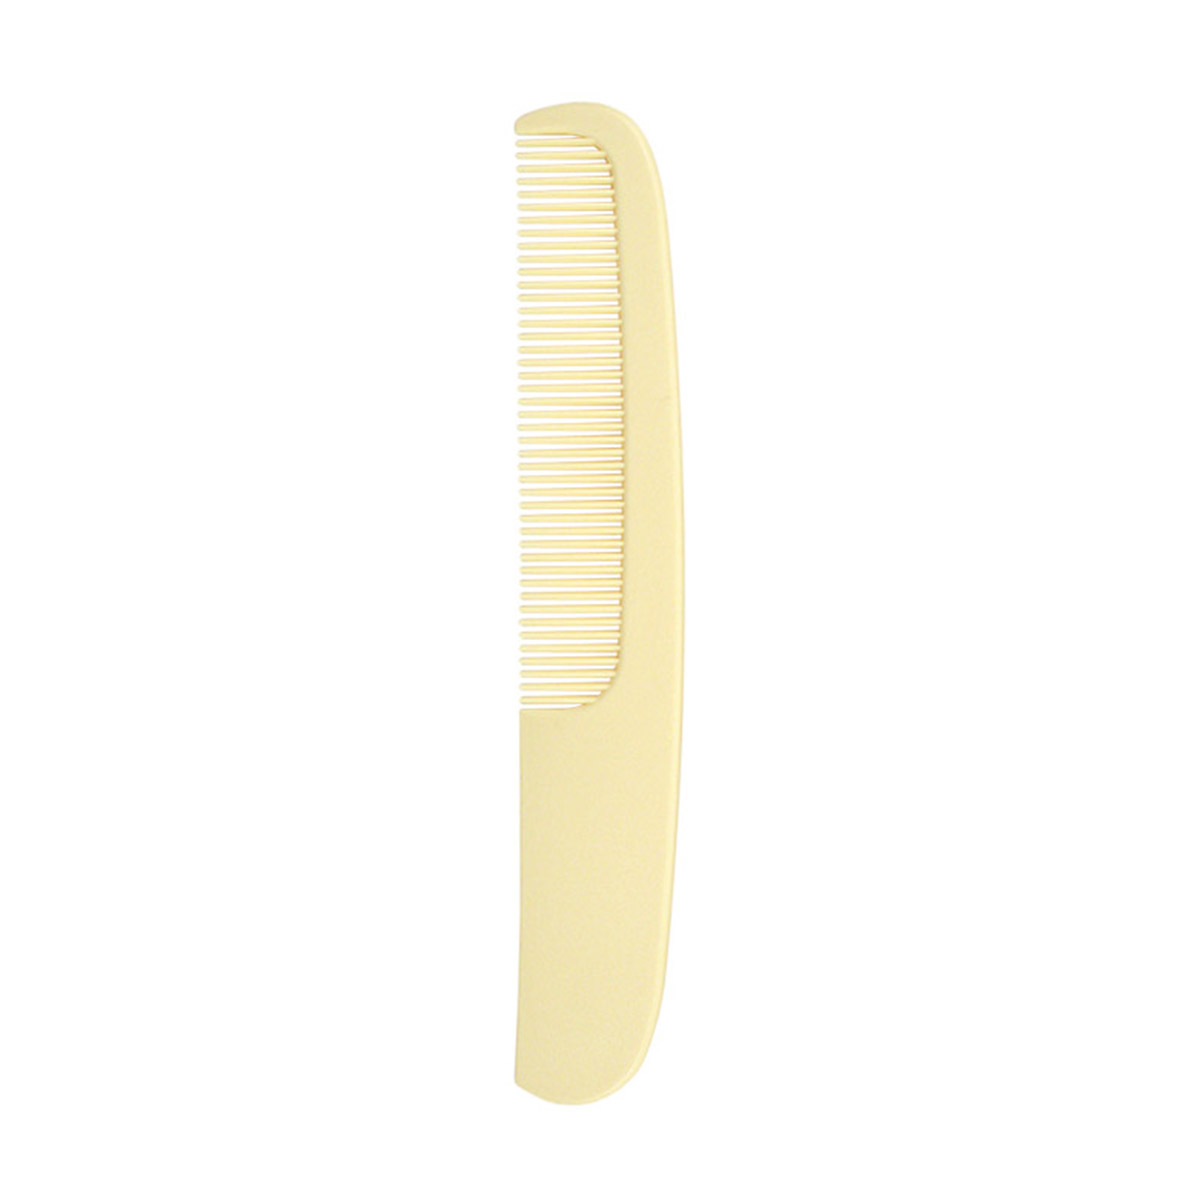 Гребень для волос Lei пластик 011 слоновая кость, 170х30 мм массажная расческа для волос с комбинированной щетиной чёрная